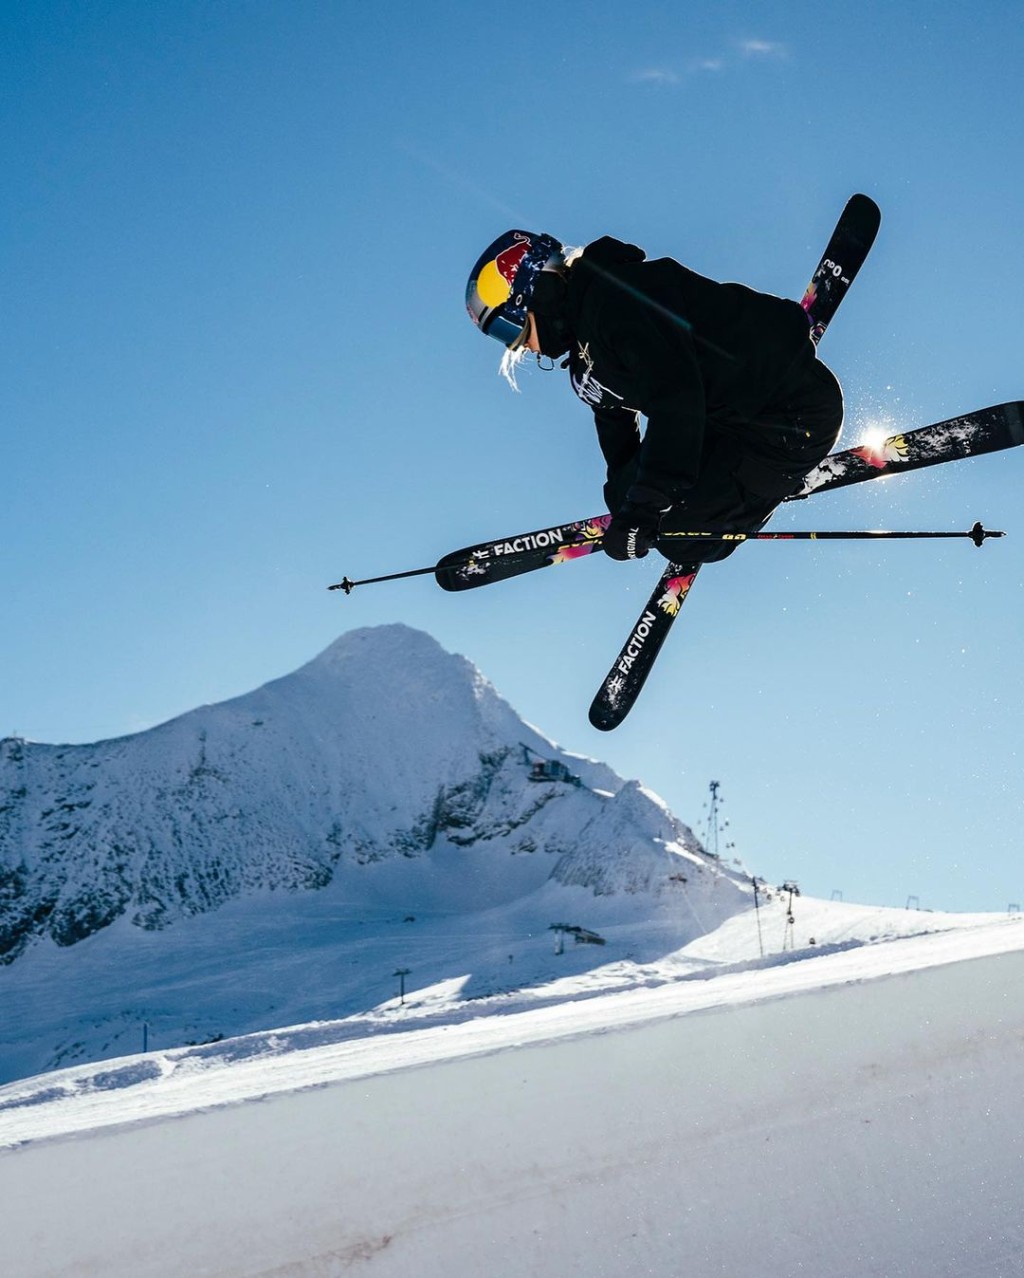 谷爱凌在滑雪运动有优异成就。IG